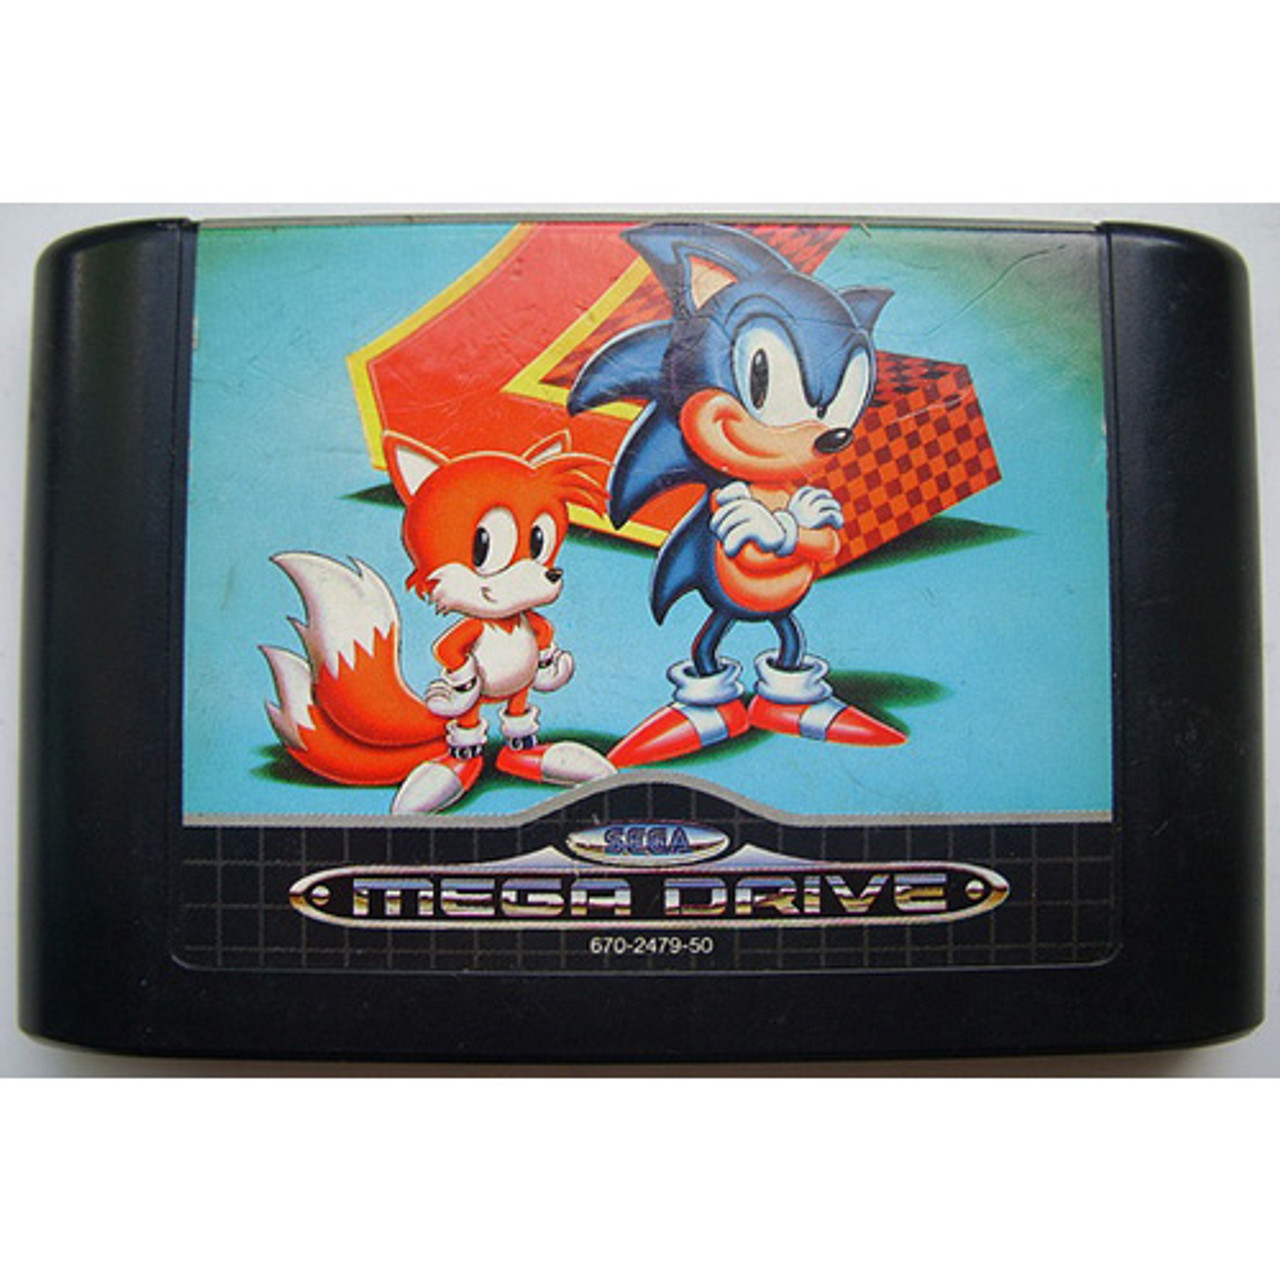 Sonic the Hedgehog 2 - Sega Genesis, Sega Genesis